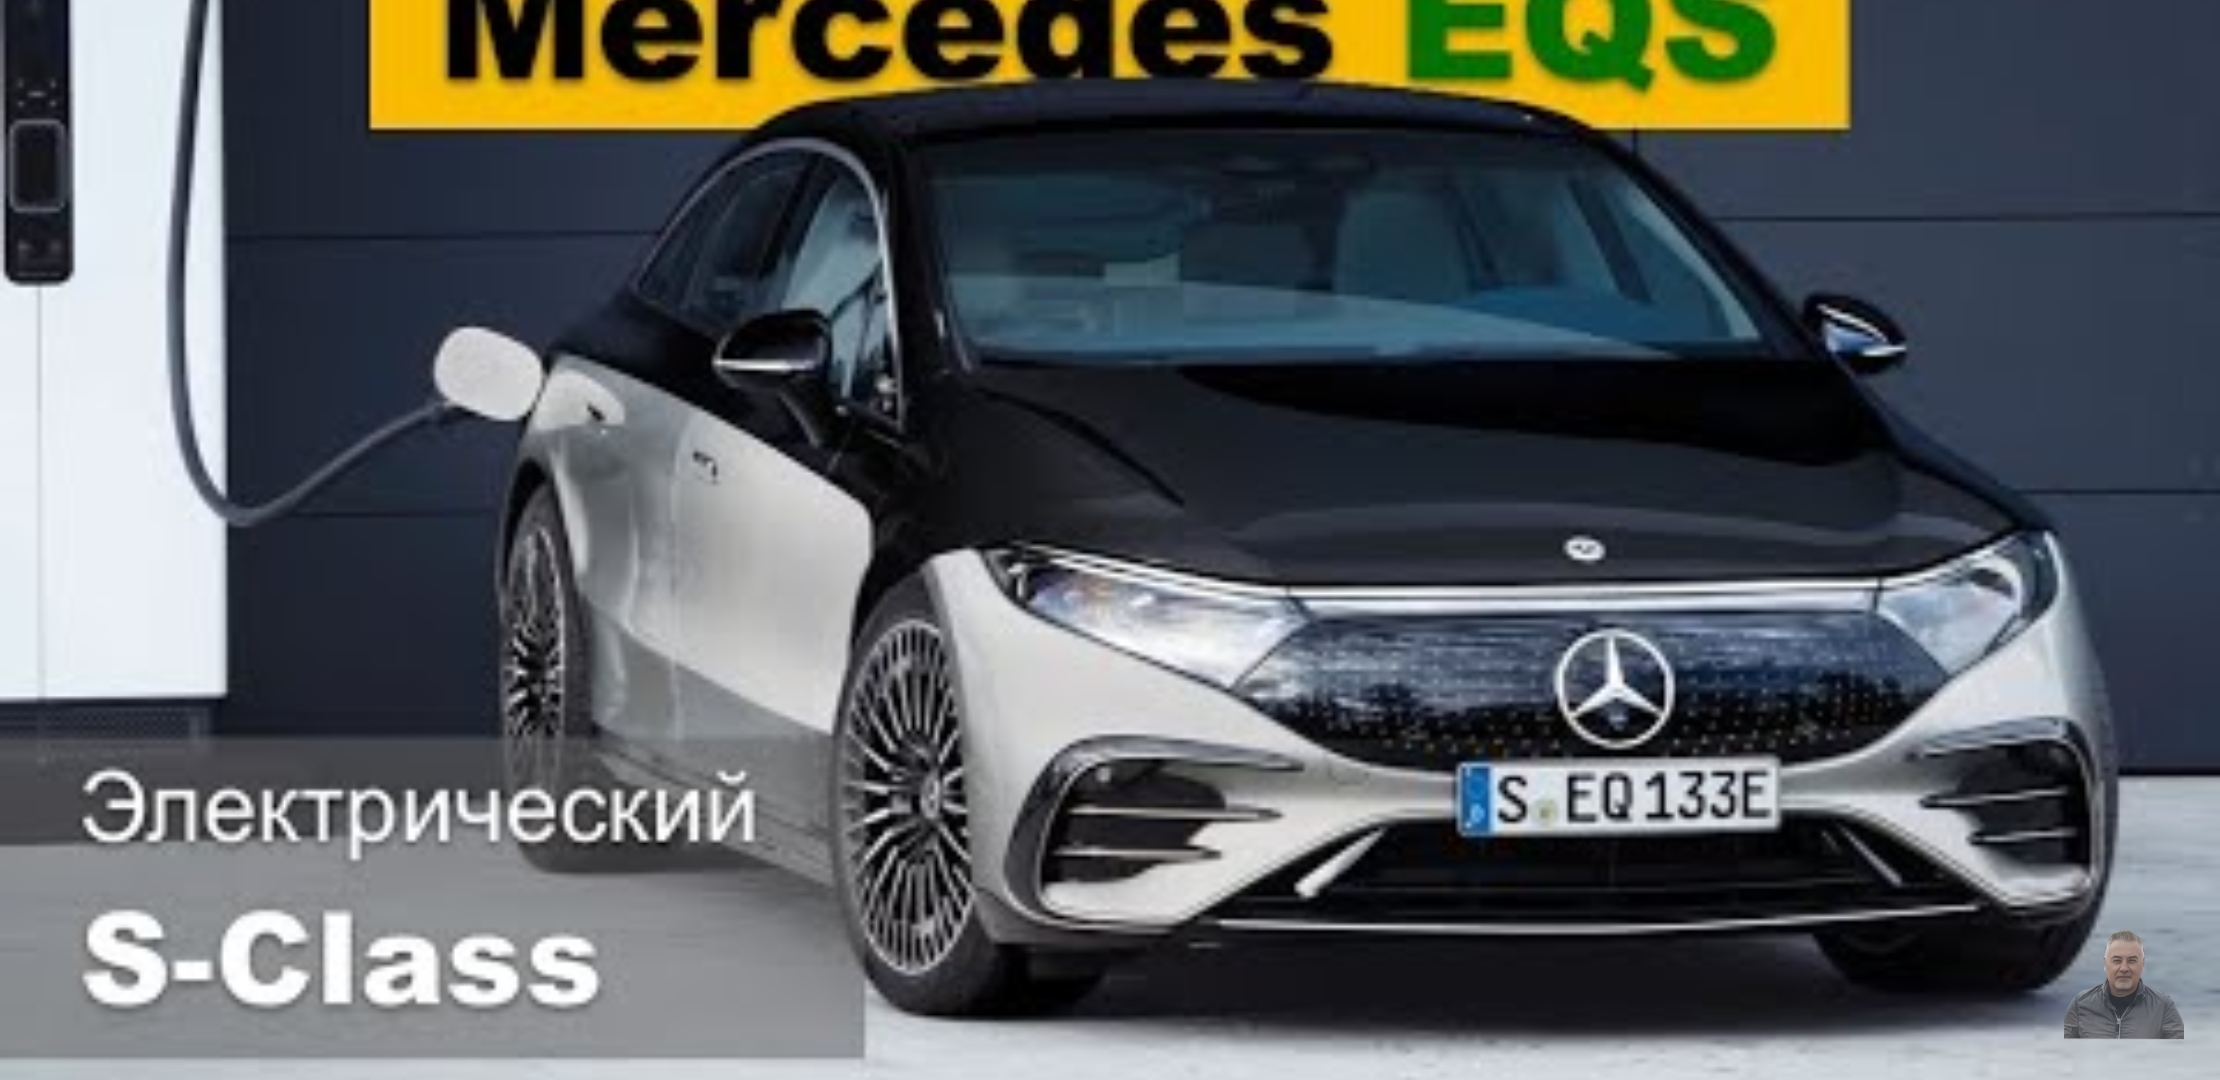 Анонс видео-теста Mercedes EQS 2021 - электрический S-Class